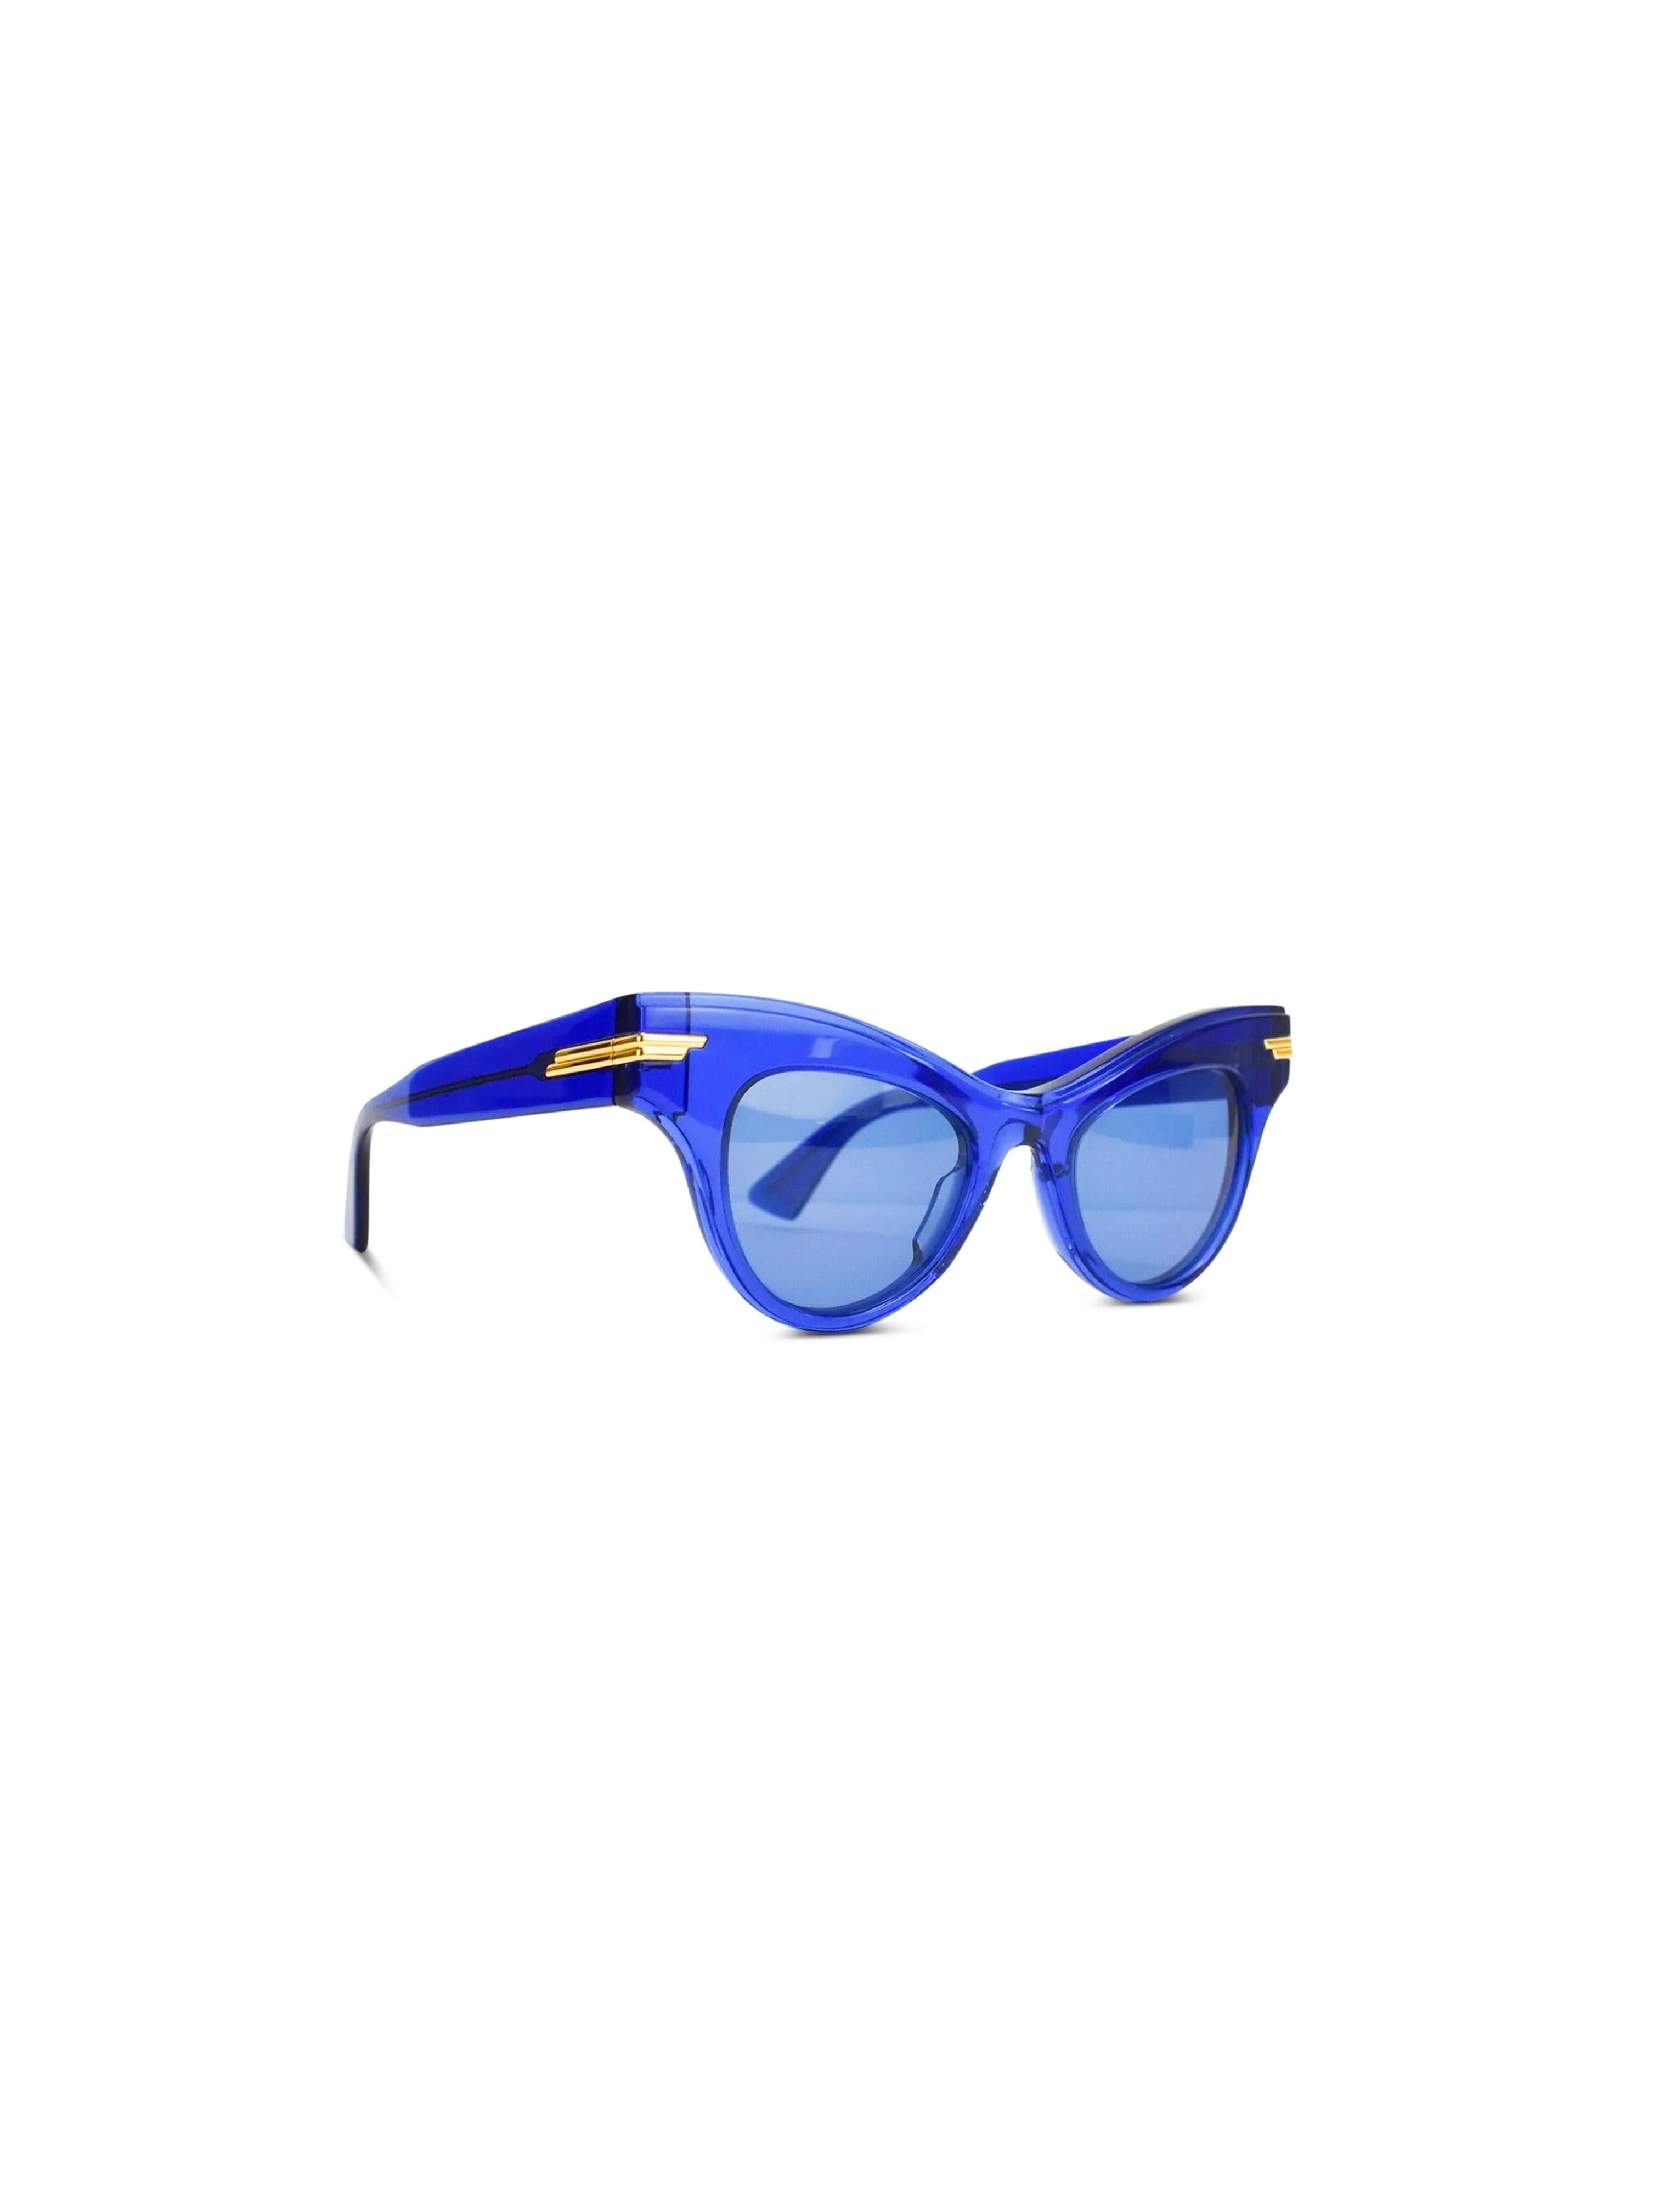 Bottega Veneta - The Original 04 Cat Eye Sunglasses - Orange